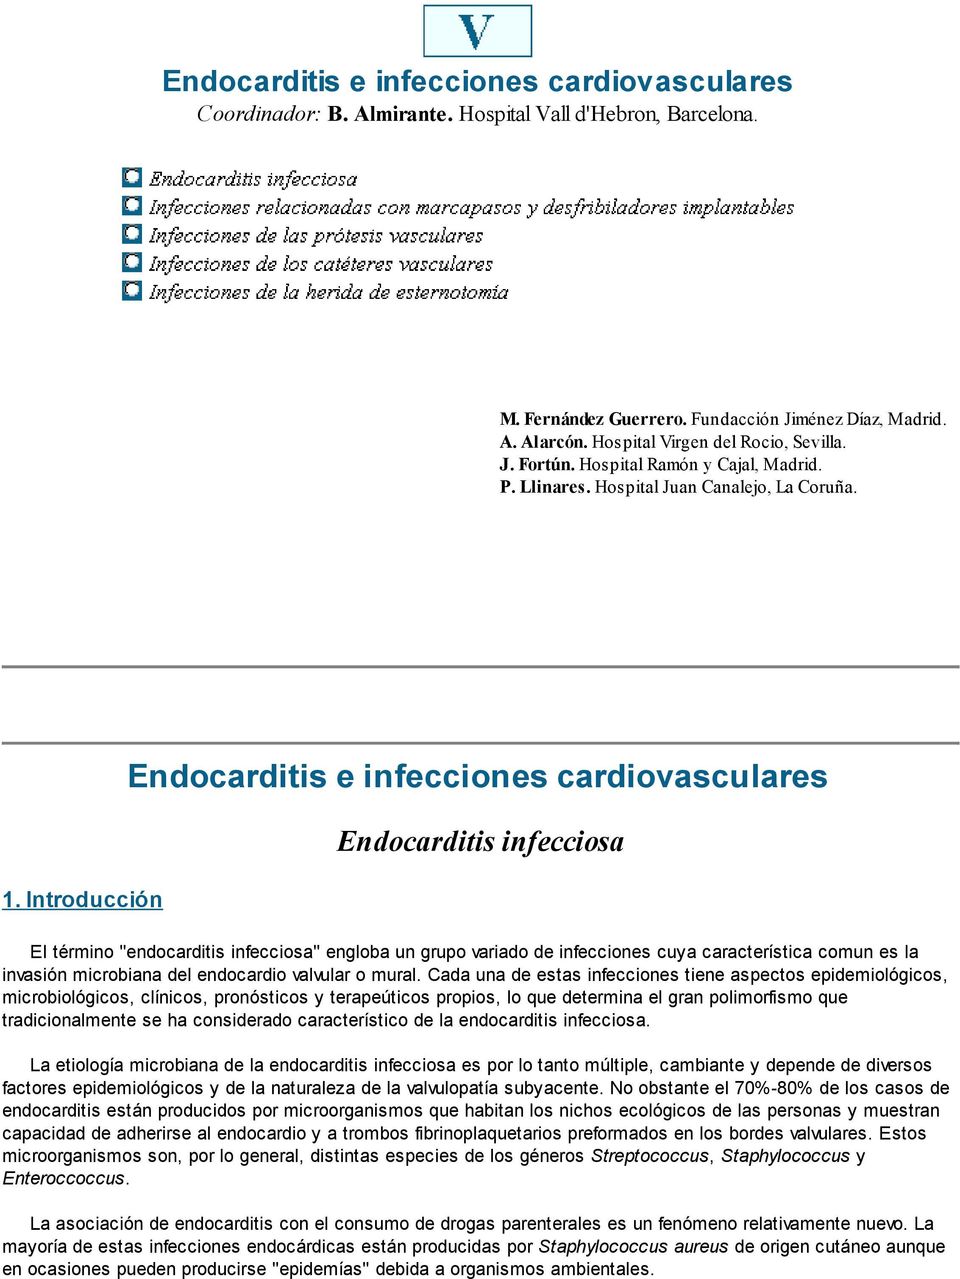 Introducción Endocarditis e infecciones cardiovasculares Endocarditis infecciosa El término "endocarditis infecciosa" engloba un grupo variado de infecciones cuya característica comun es la invasión